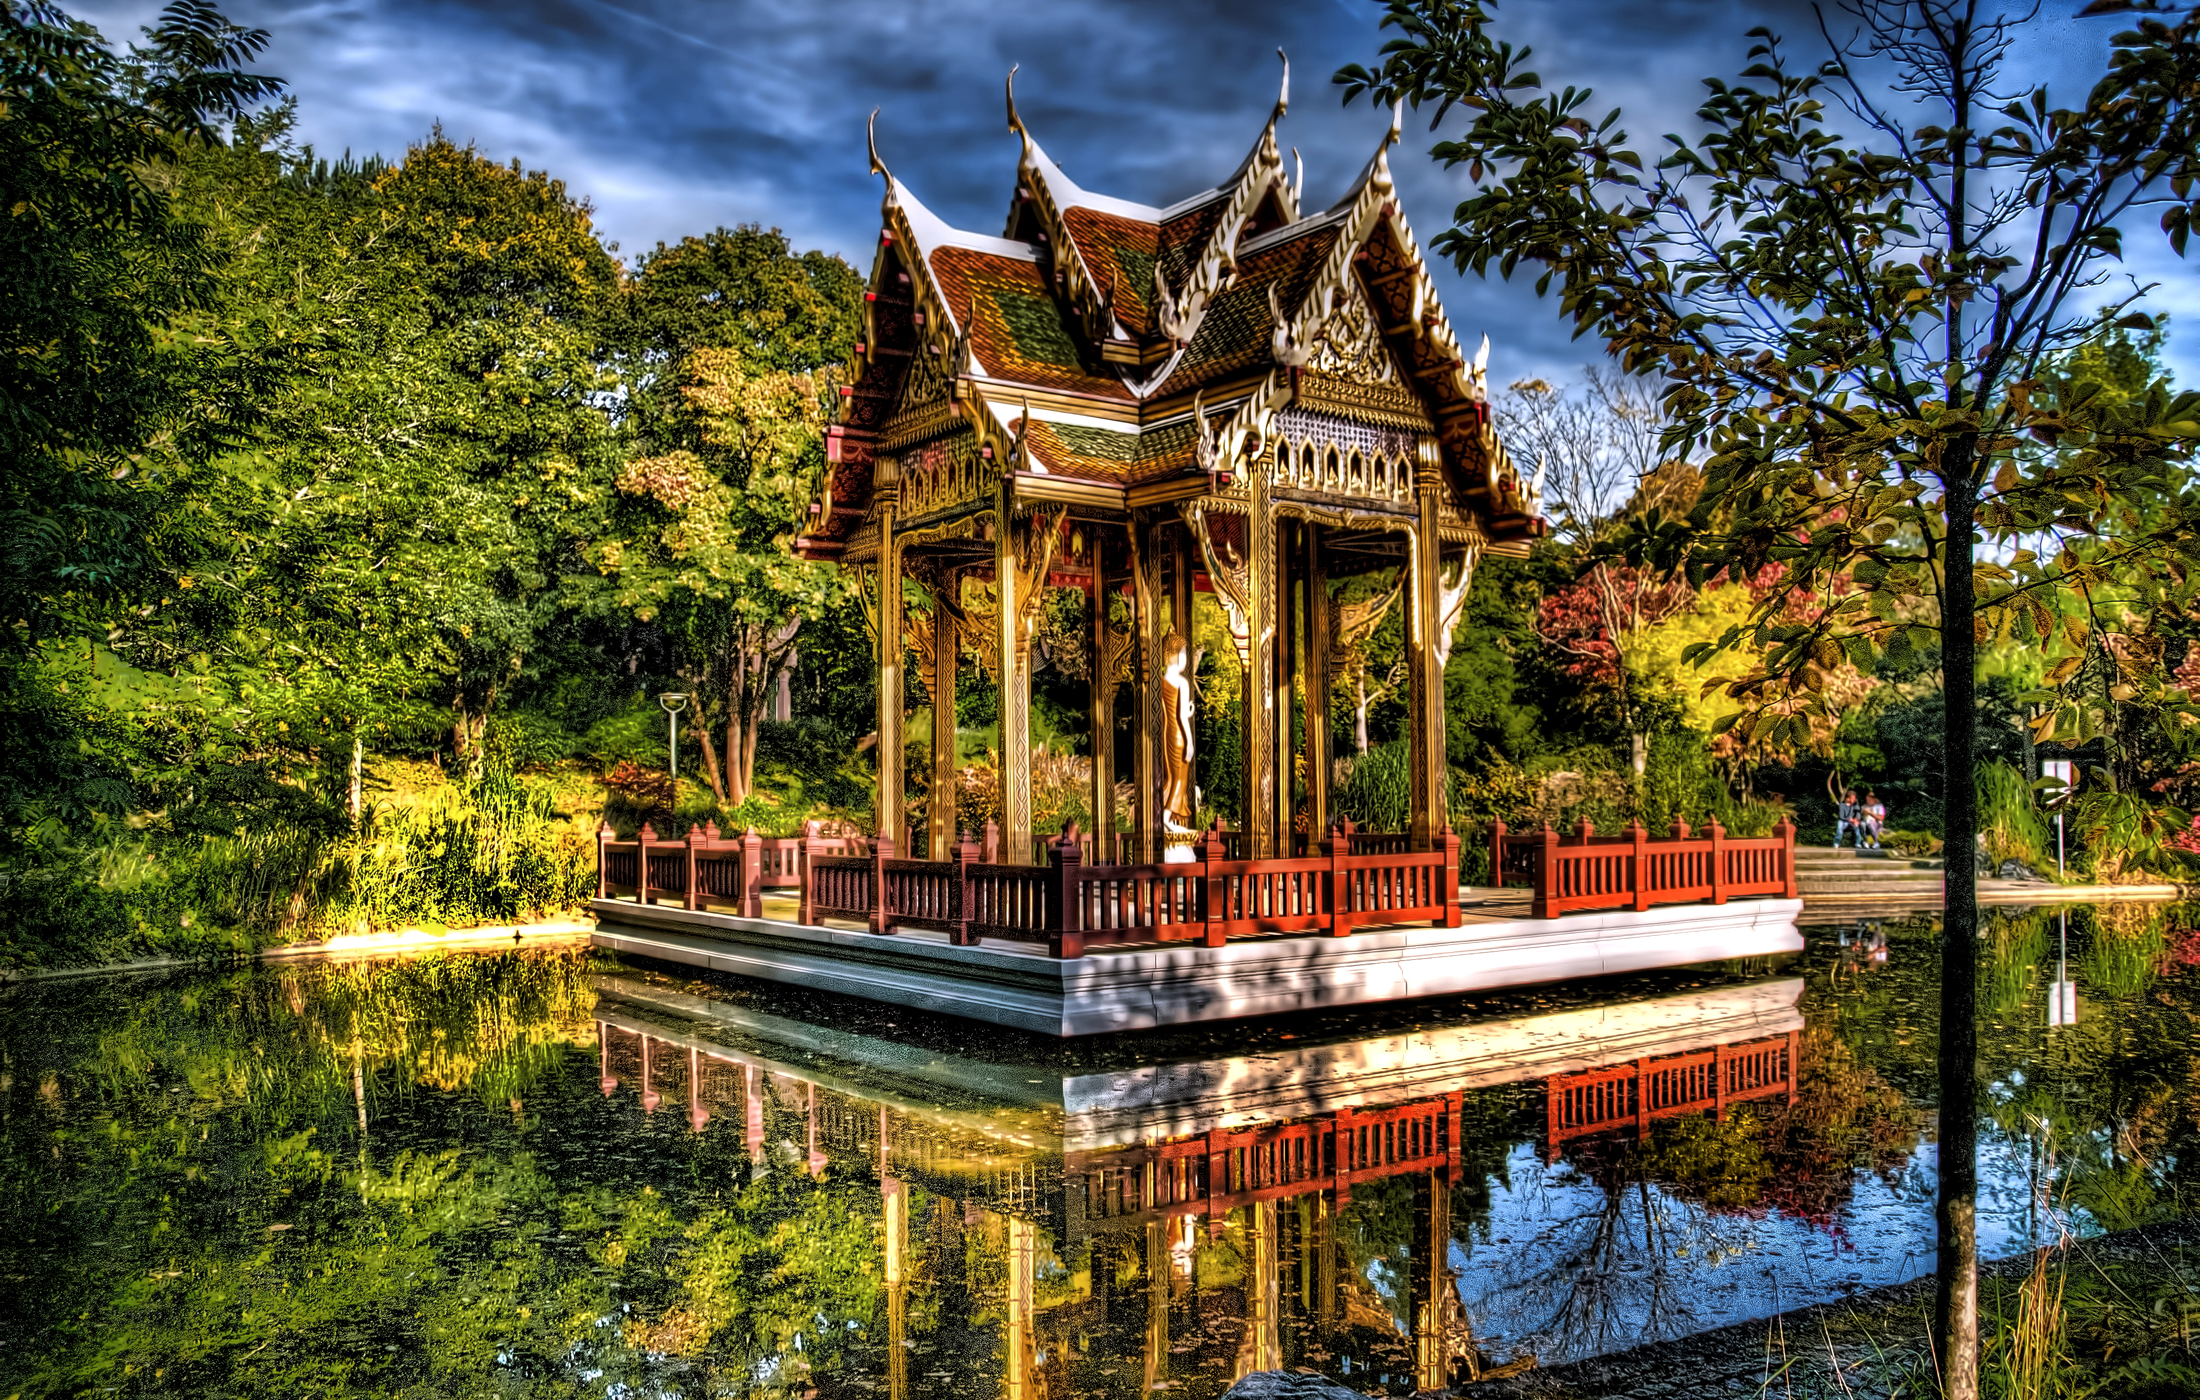 Скачать обои бесплатно Парк, Дерево, Пагода, Пруд, Германия, Фотографии картинка на рабочий стол ПК